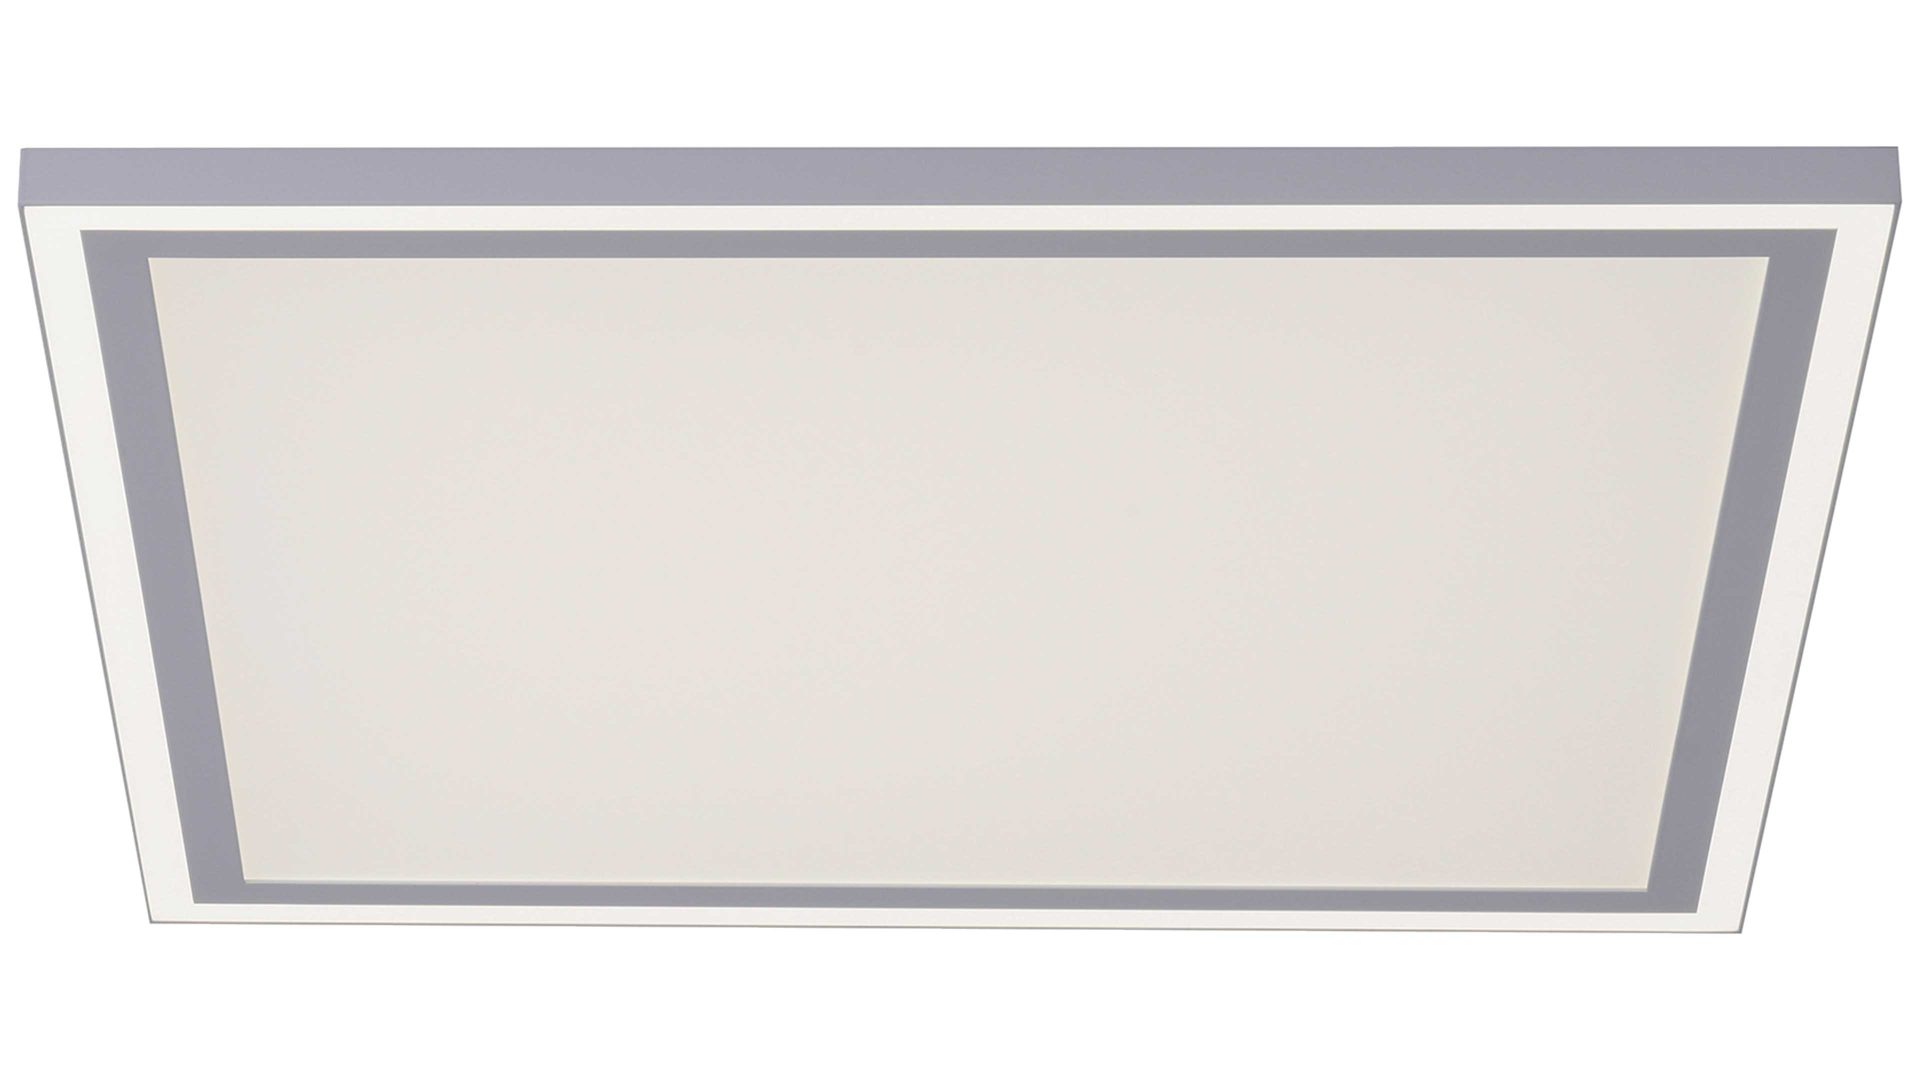 Deckenleuchte Leuchtendirekt aus Metall in Weiß LeuchtenDirekt Leuchten Serie Edging - Deckenlampe weißes Metall - ca. 68 x 68 cm